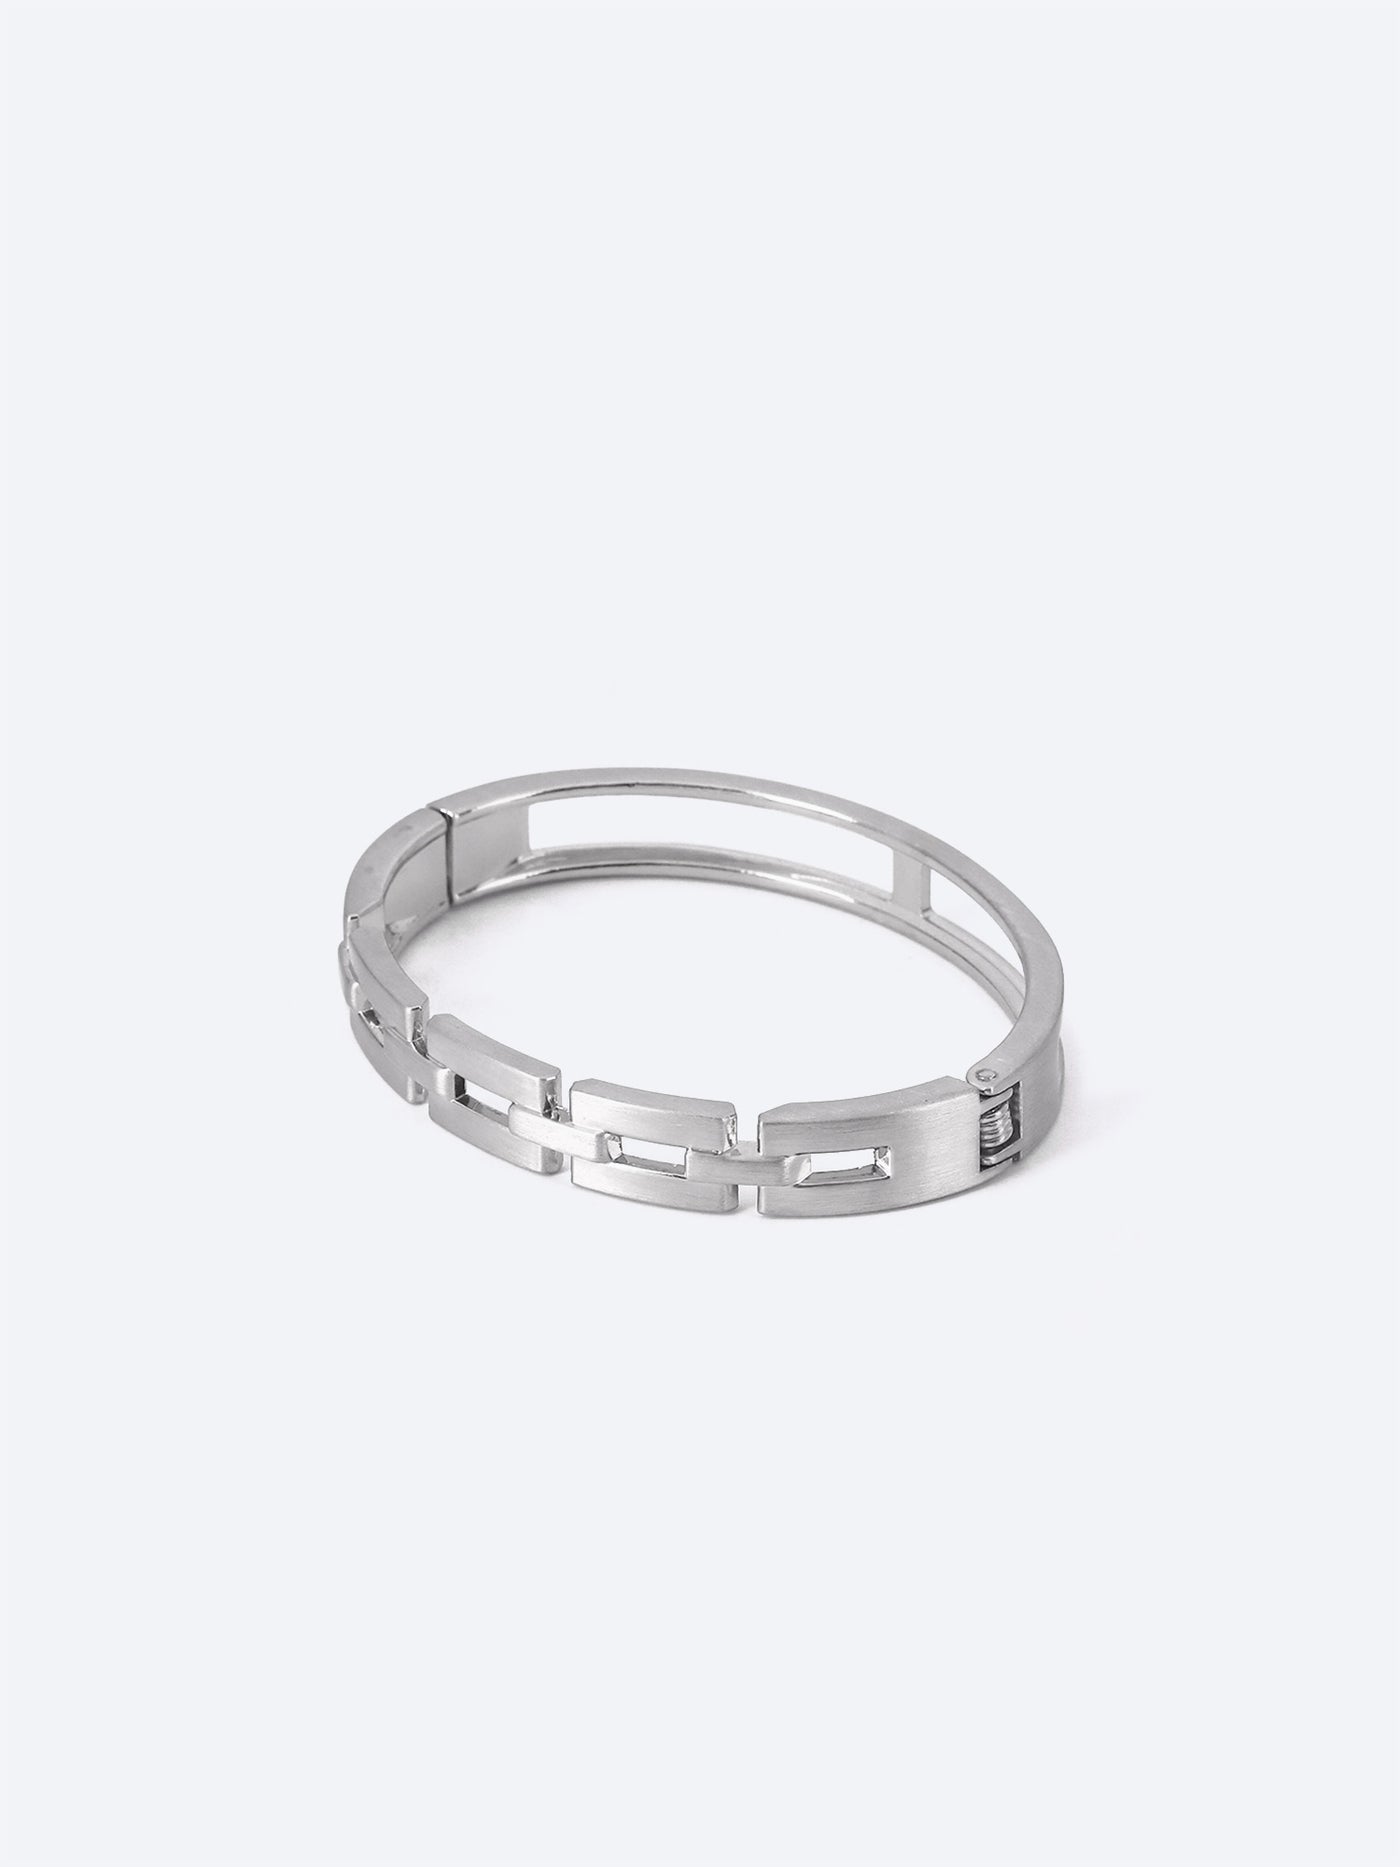 Plated Metal Bracelet - Link Chain Design